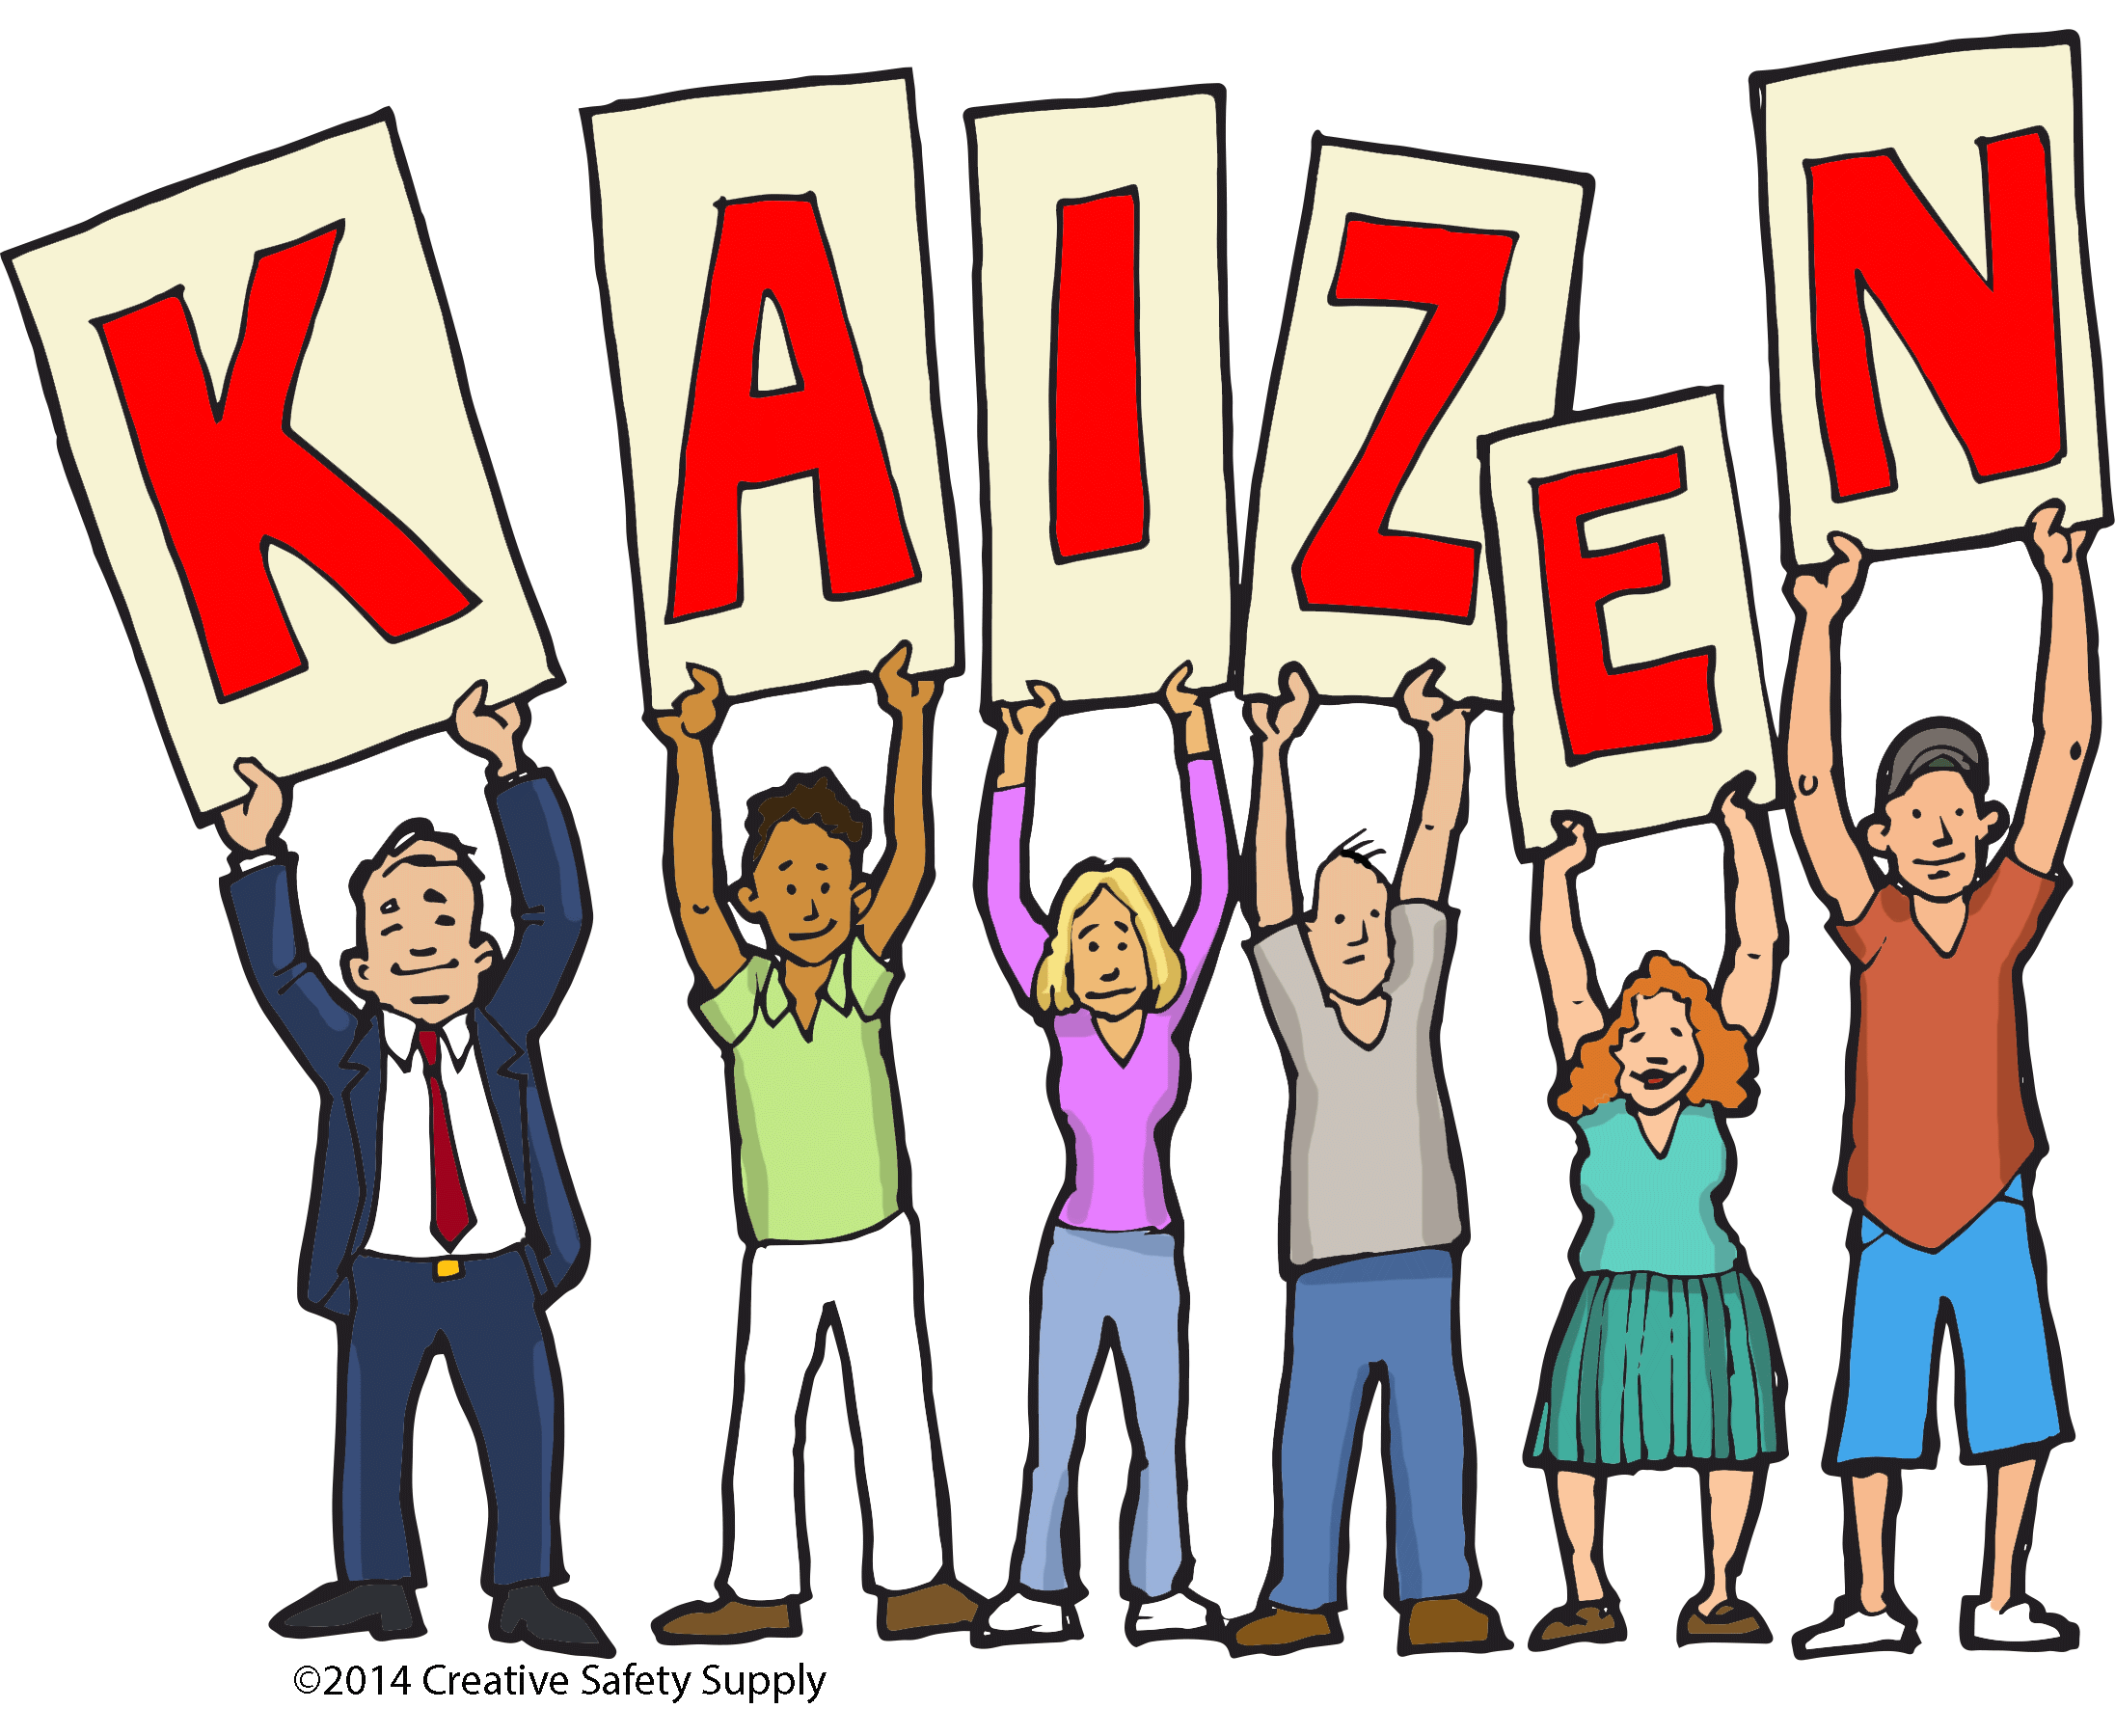 Năng suất chất lượng: Kaizen giúp tăng trưởng dài hạn